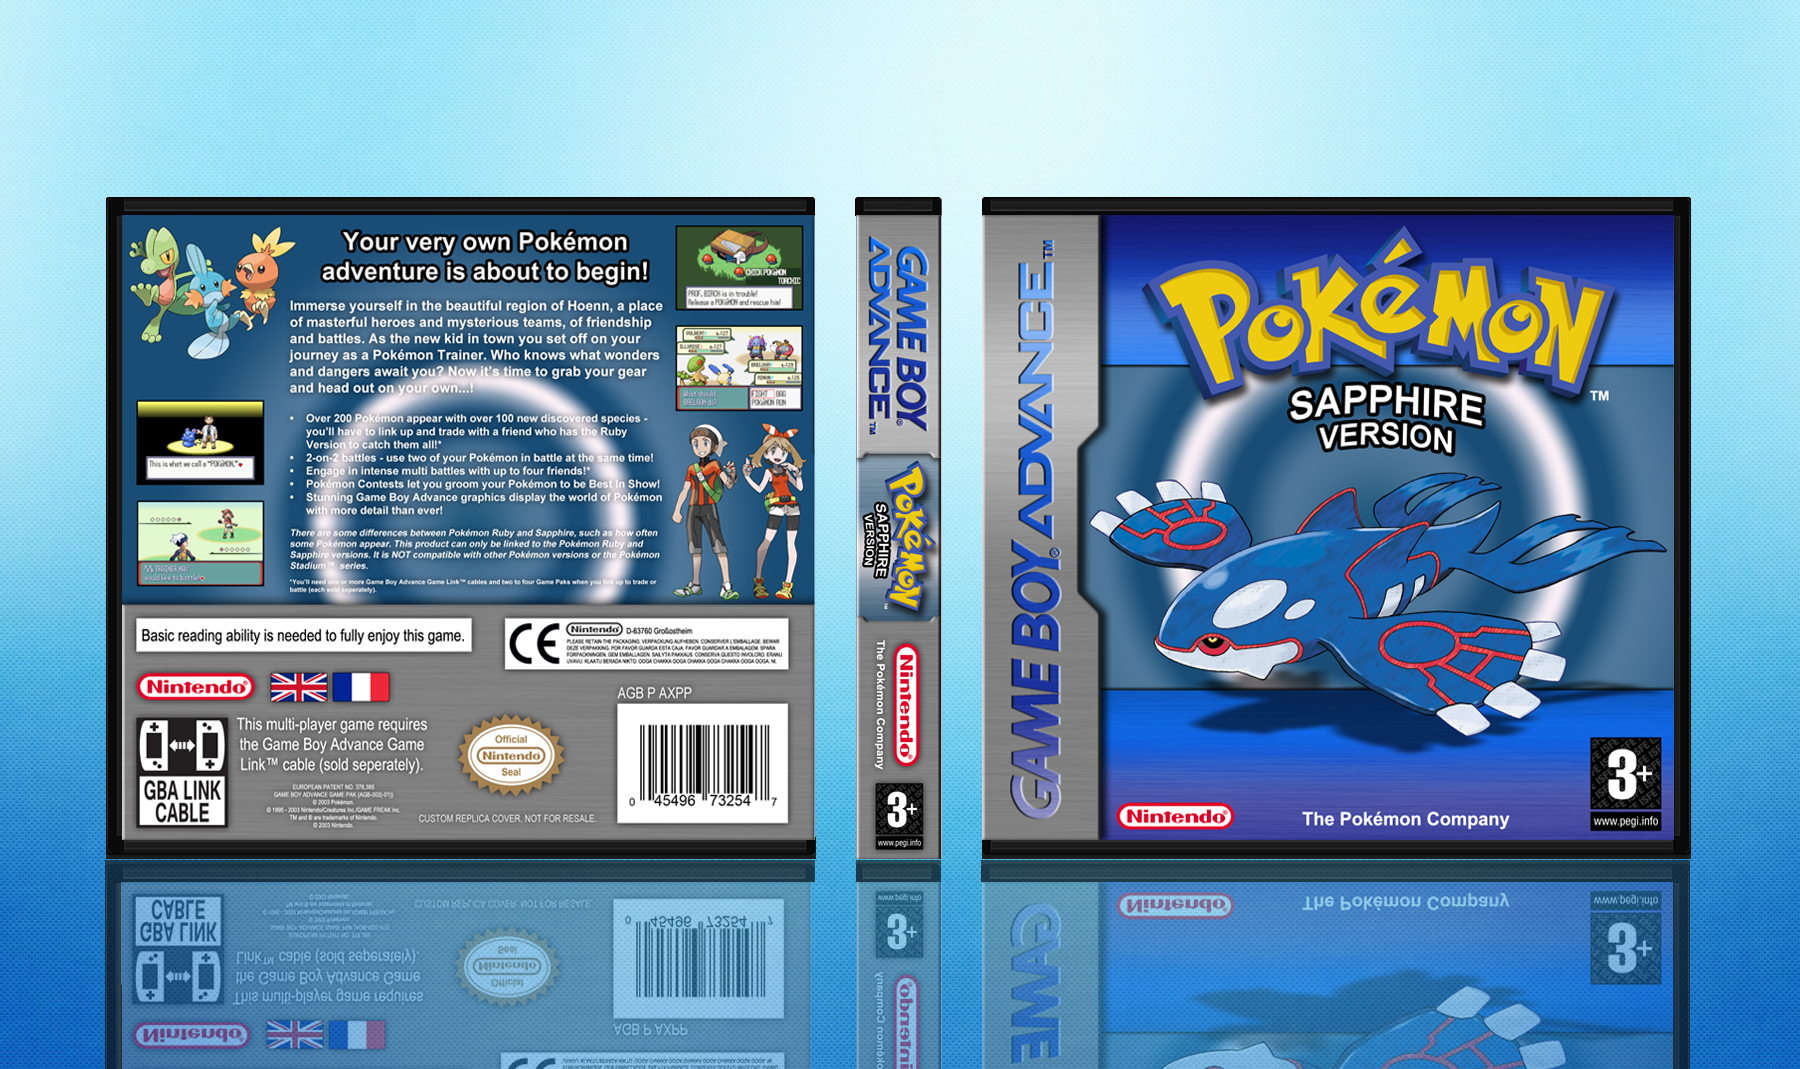 Pokemon Sapphire version box cover